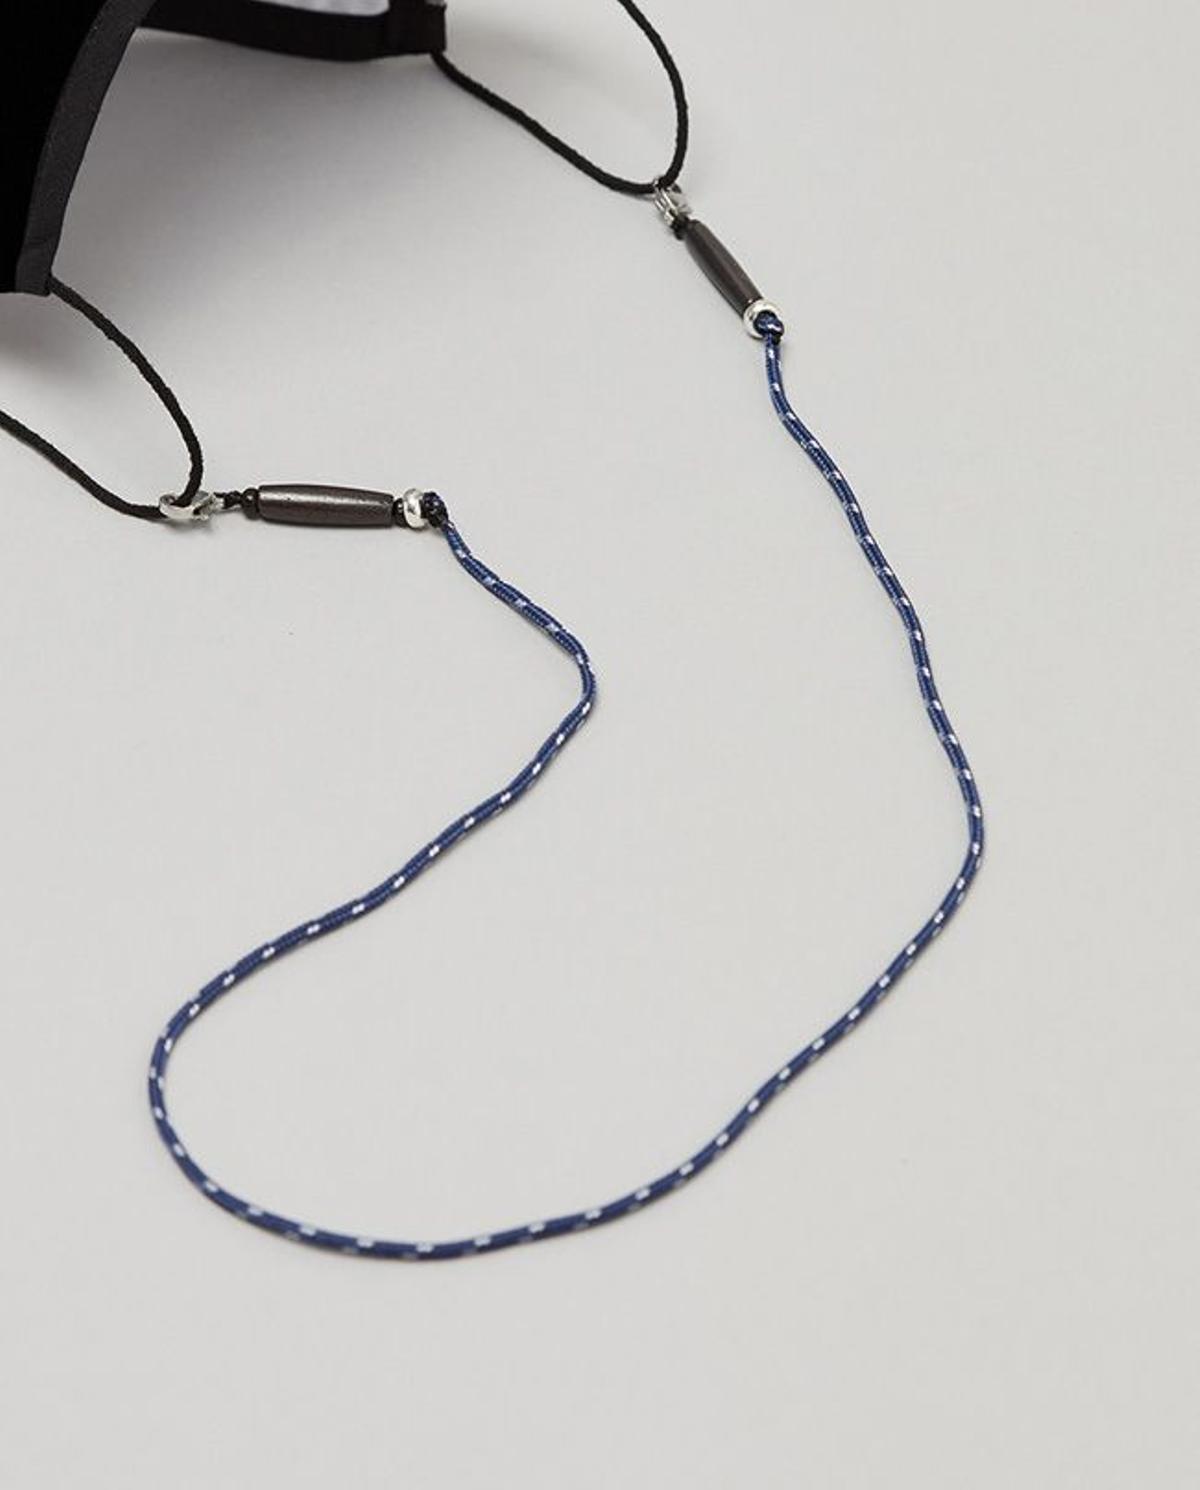 Cadena de mascarilla con cordón azul, de SystemAction